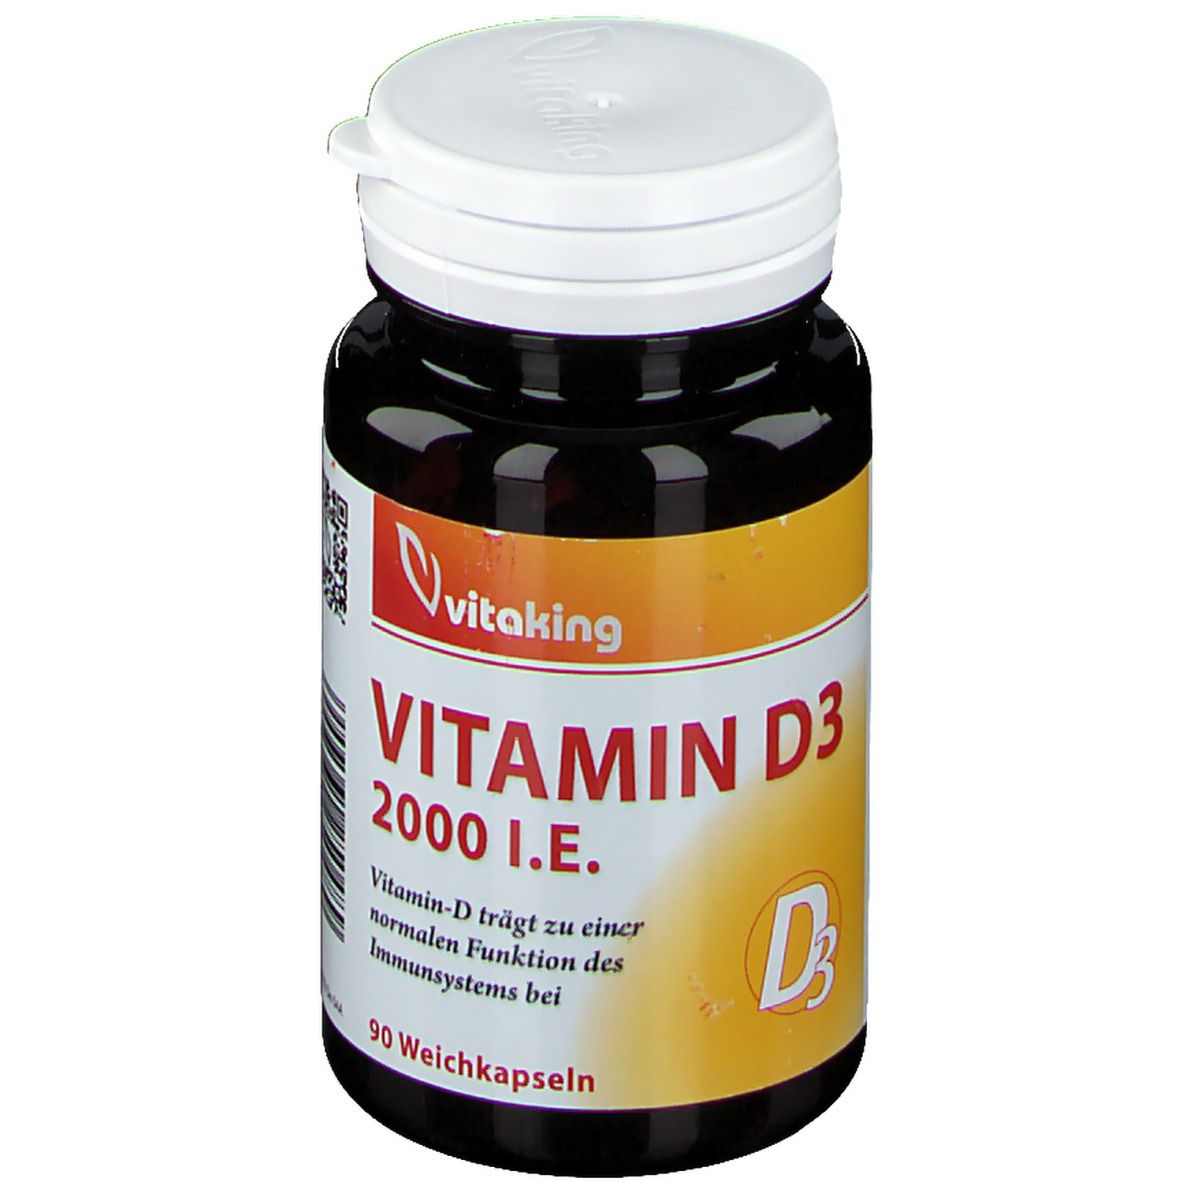 Image of vitaking Vitamin D3 2000 I.E.